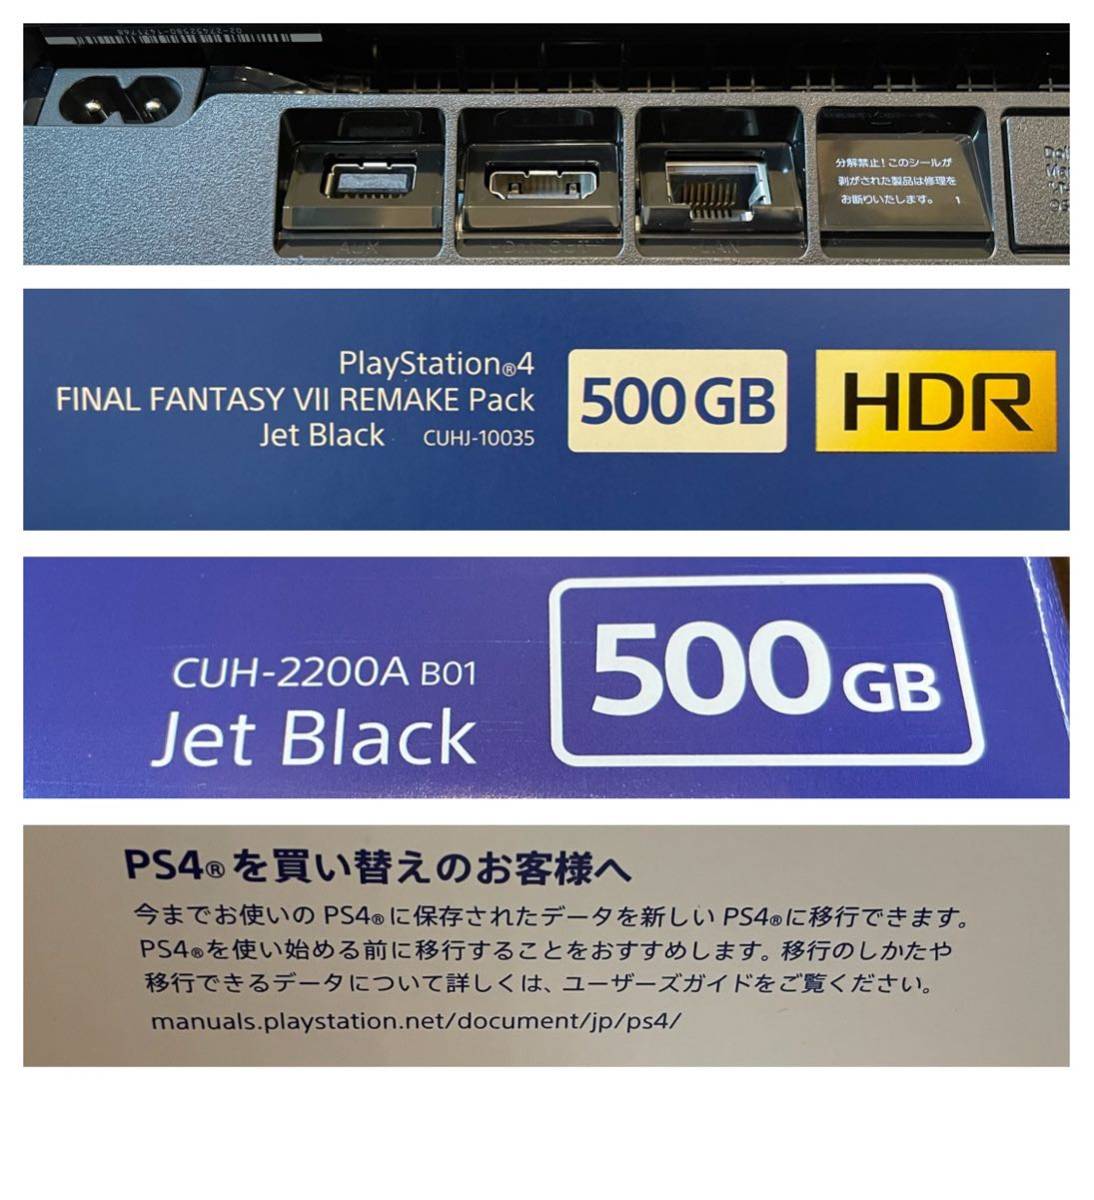 美品 同梱版 PlayStation 4 FINAL FANTASY VII REMAKE Pack 500GB Jet Black CUHJ-10035 CUH-2200AB01 PS4 プレステ4 本体 FF7 限定版